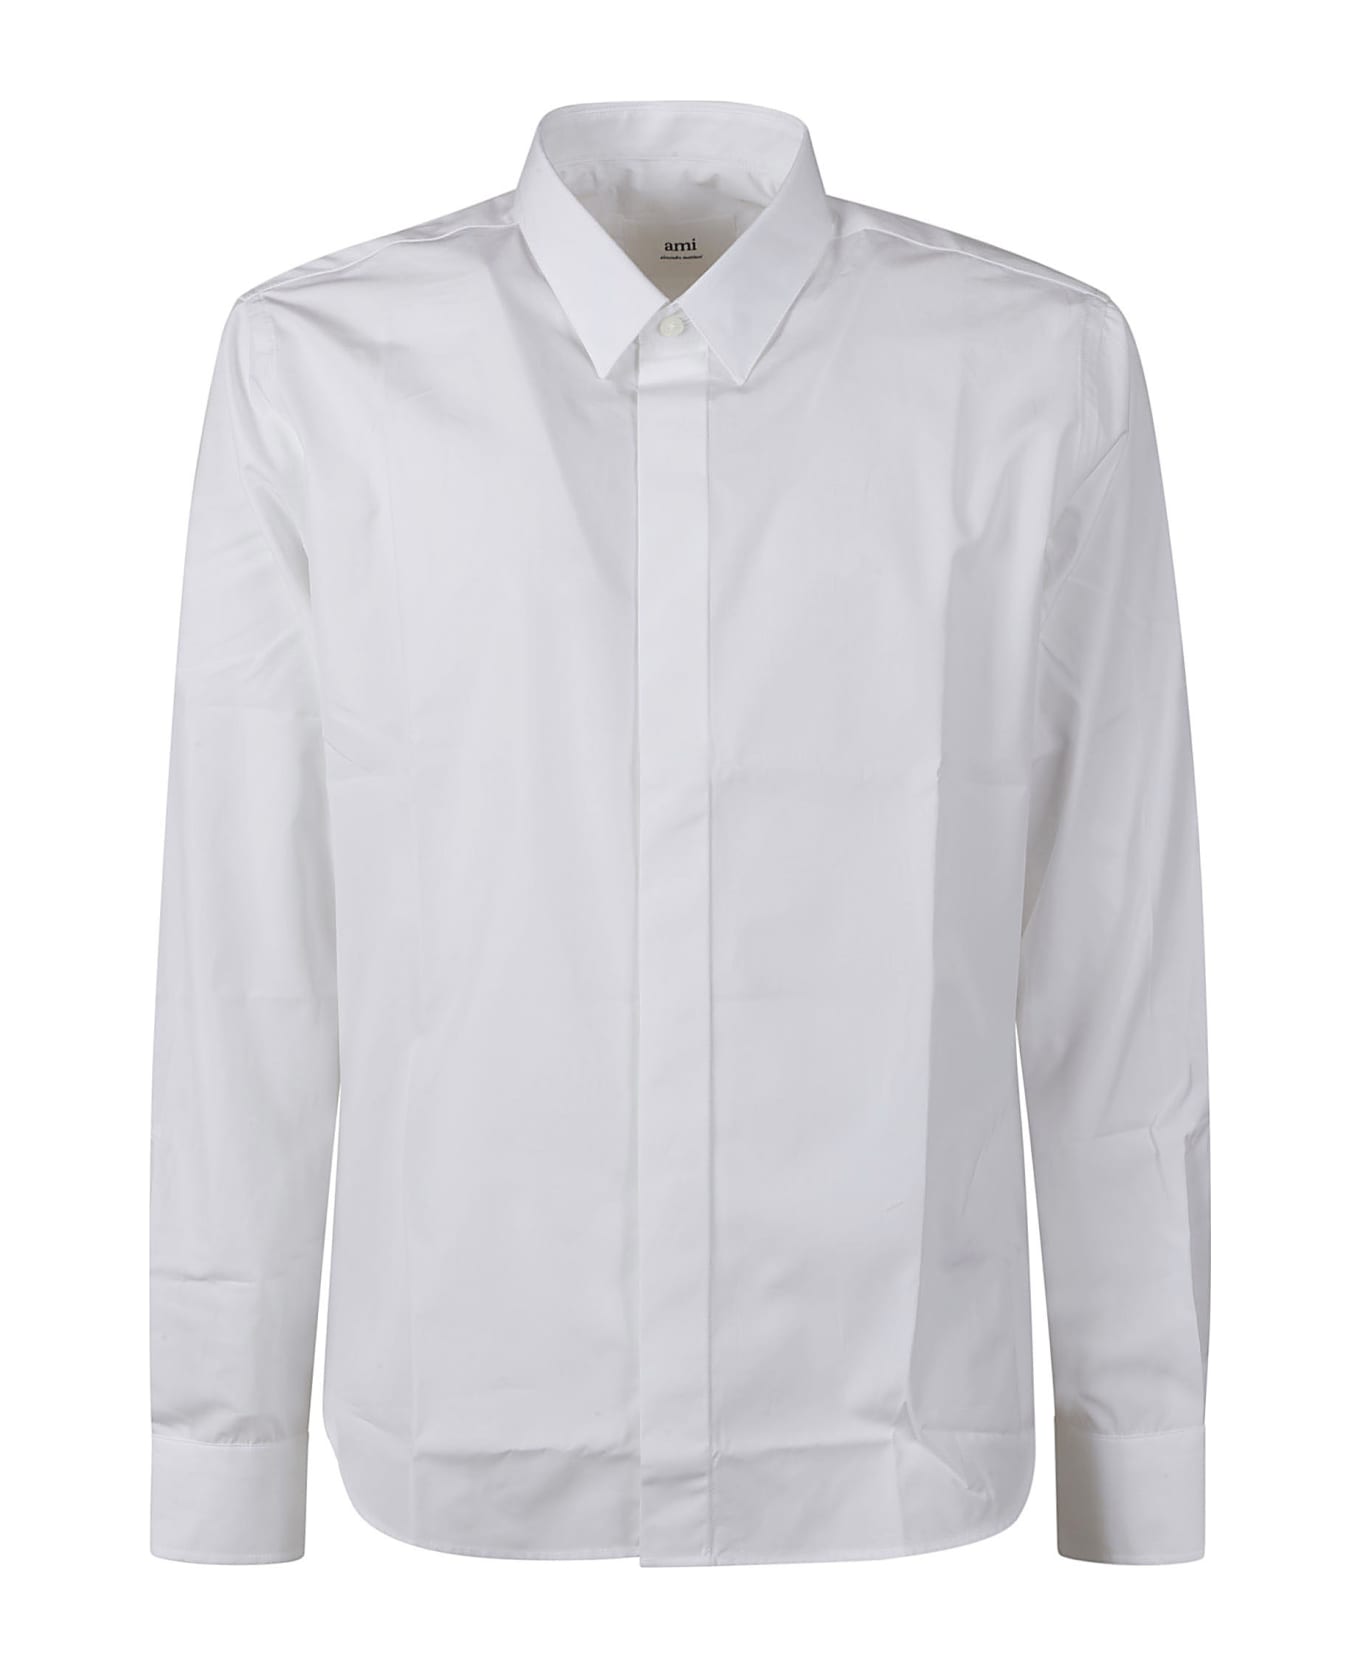 Ami Alexandre Mattiussi Round Hem Plain Shirt - White シャツ